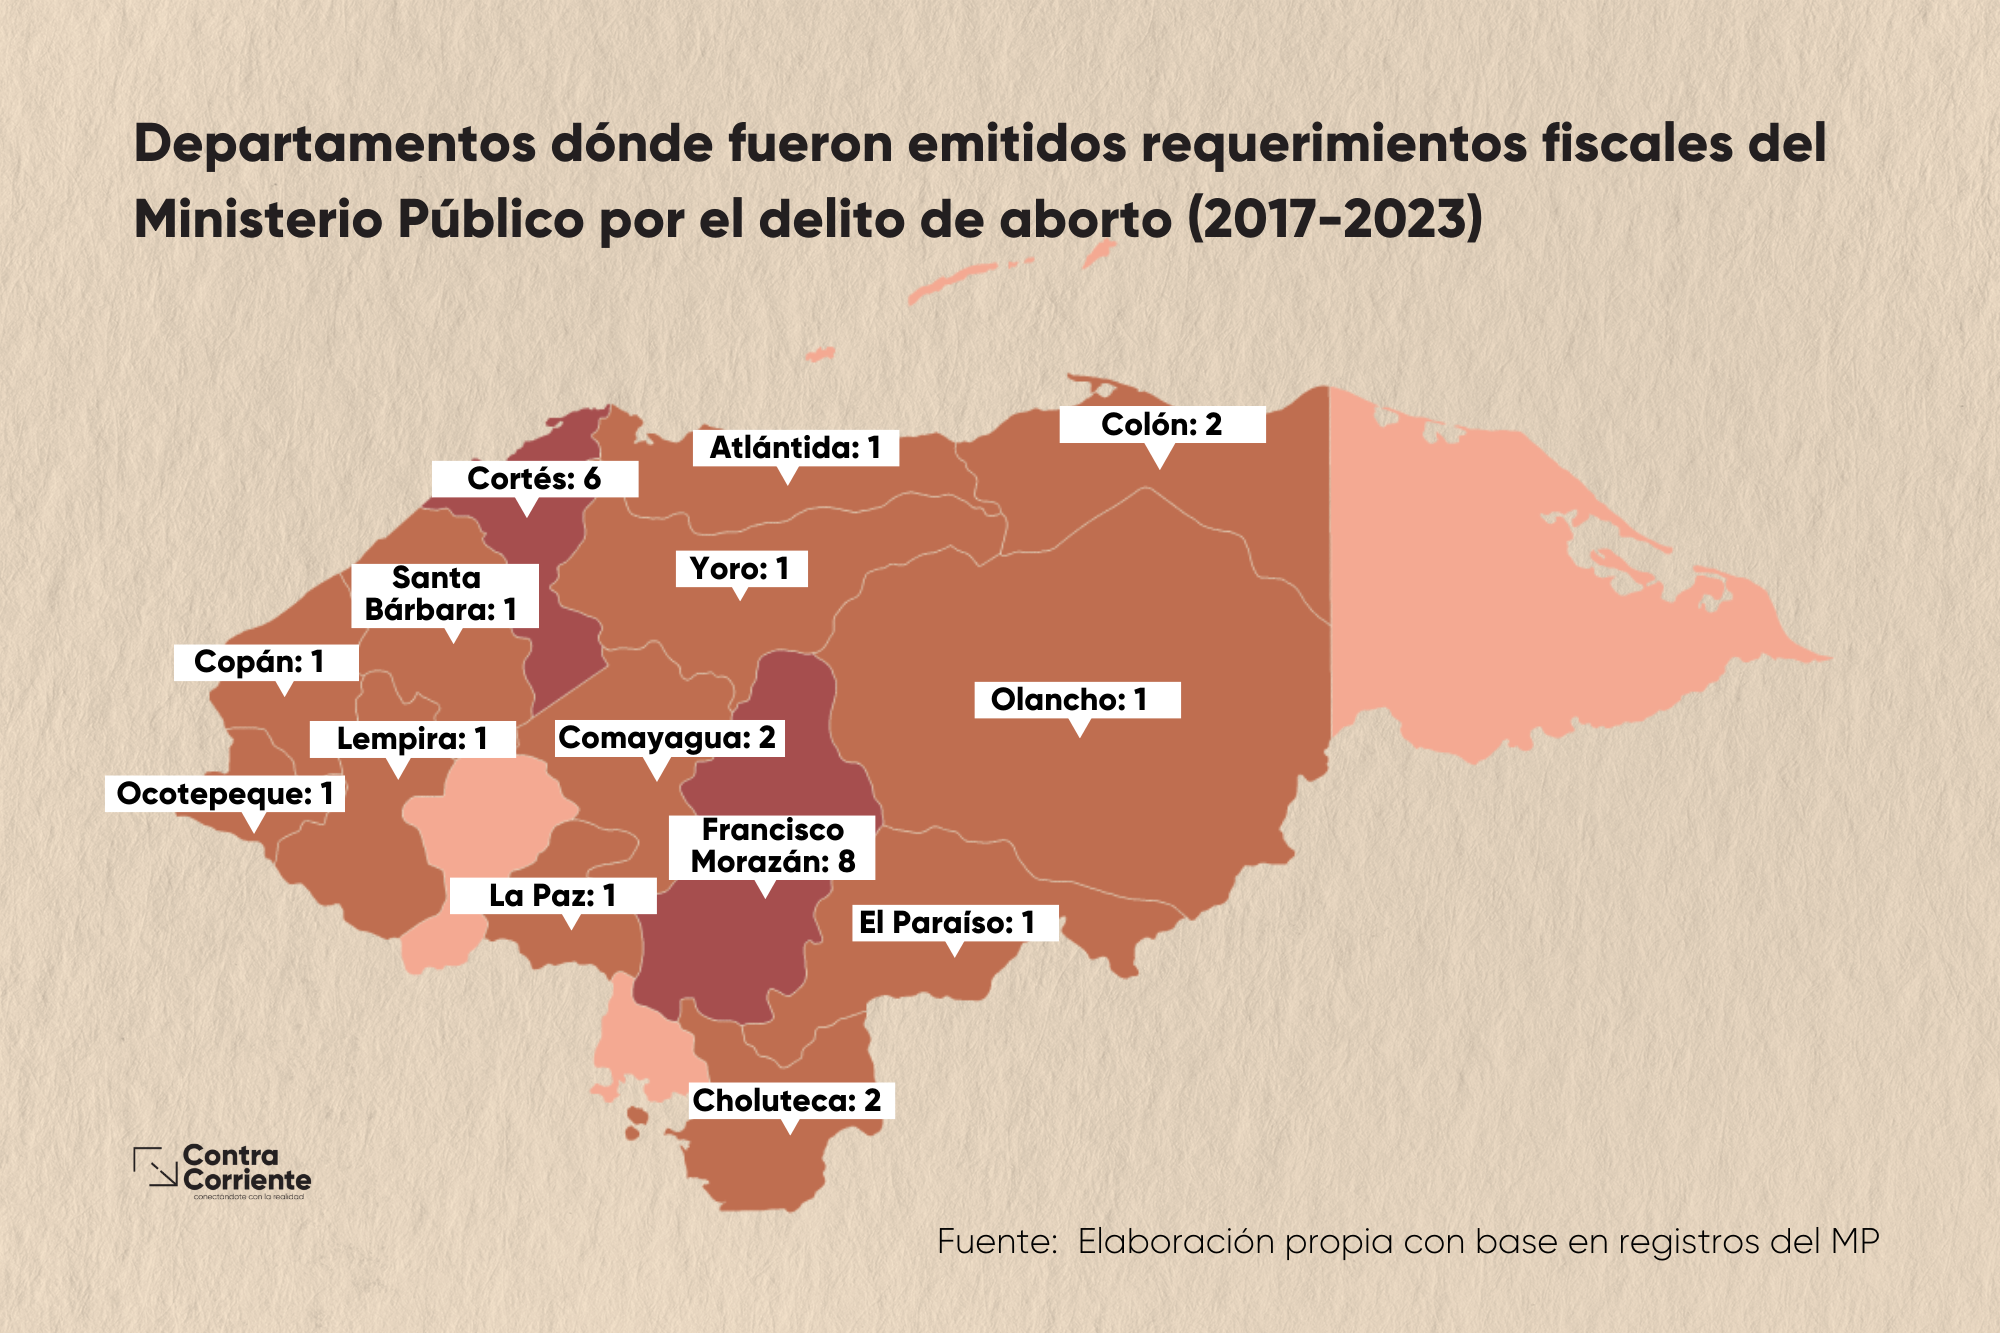 Requerimientos fiscales por delito de aborto (2017-2023)
Departamentos donde fueron emitidos requerimientos fiscales del Ministerio Público por el delito de aborto (2017-2023)